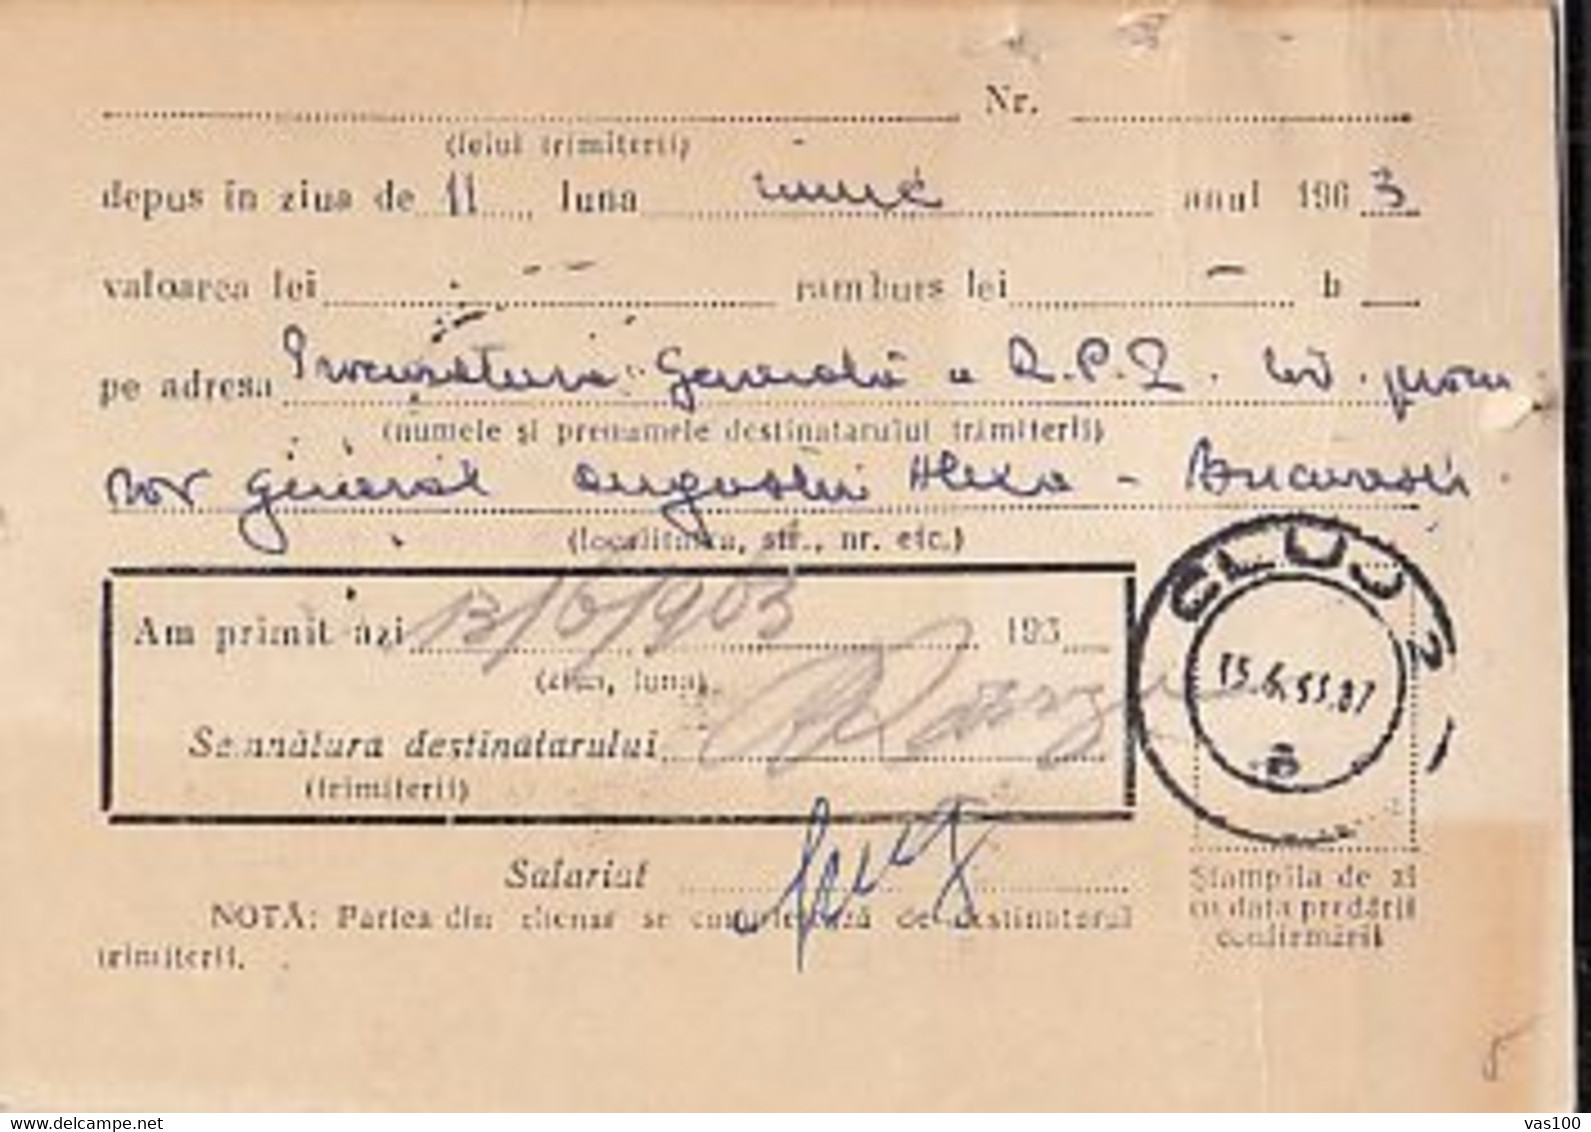 PARCEL RECEIPT CONFIRMATION, 1963, ROMANIA - Parcel Post